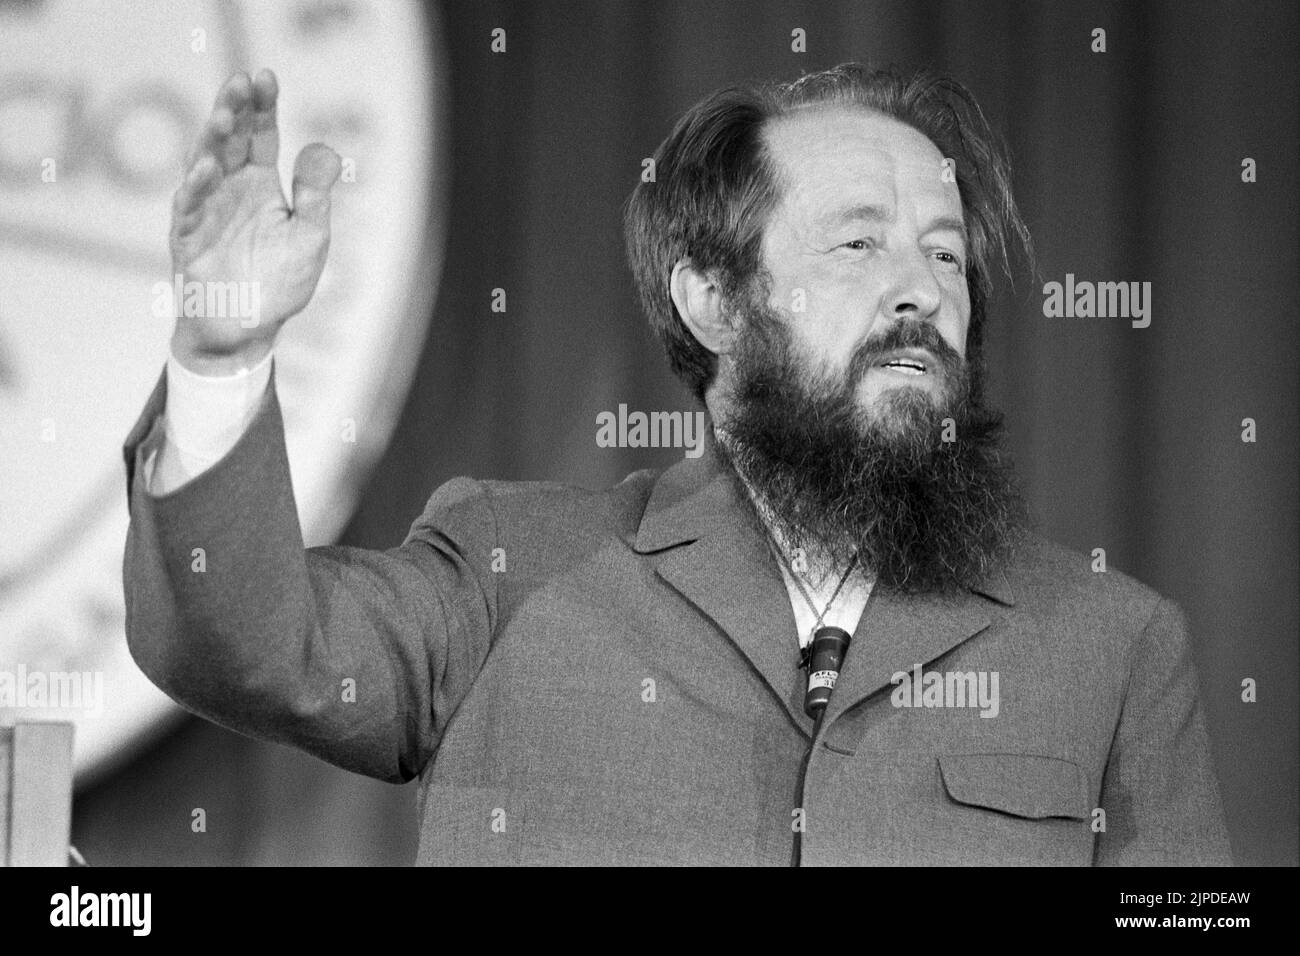 Le dissident soviétique Aleksandr Soljenitsyn s'est exprimé lors d'une réunion de l'AFL-CIO à Washington, D.C., dans laquelle il a prononcé son discours d'avertissement à l'Ouest sur l'30 juin 1975. (ÉTATS-UNIS) Banque D'Images